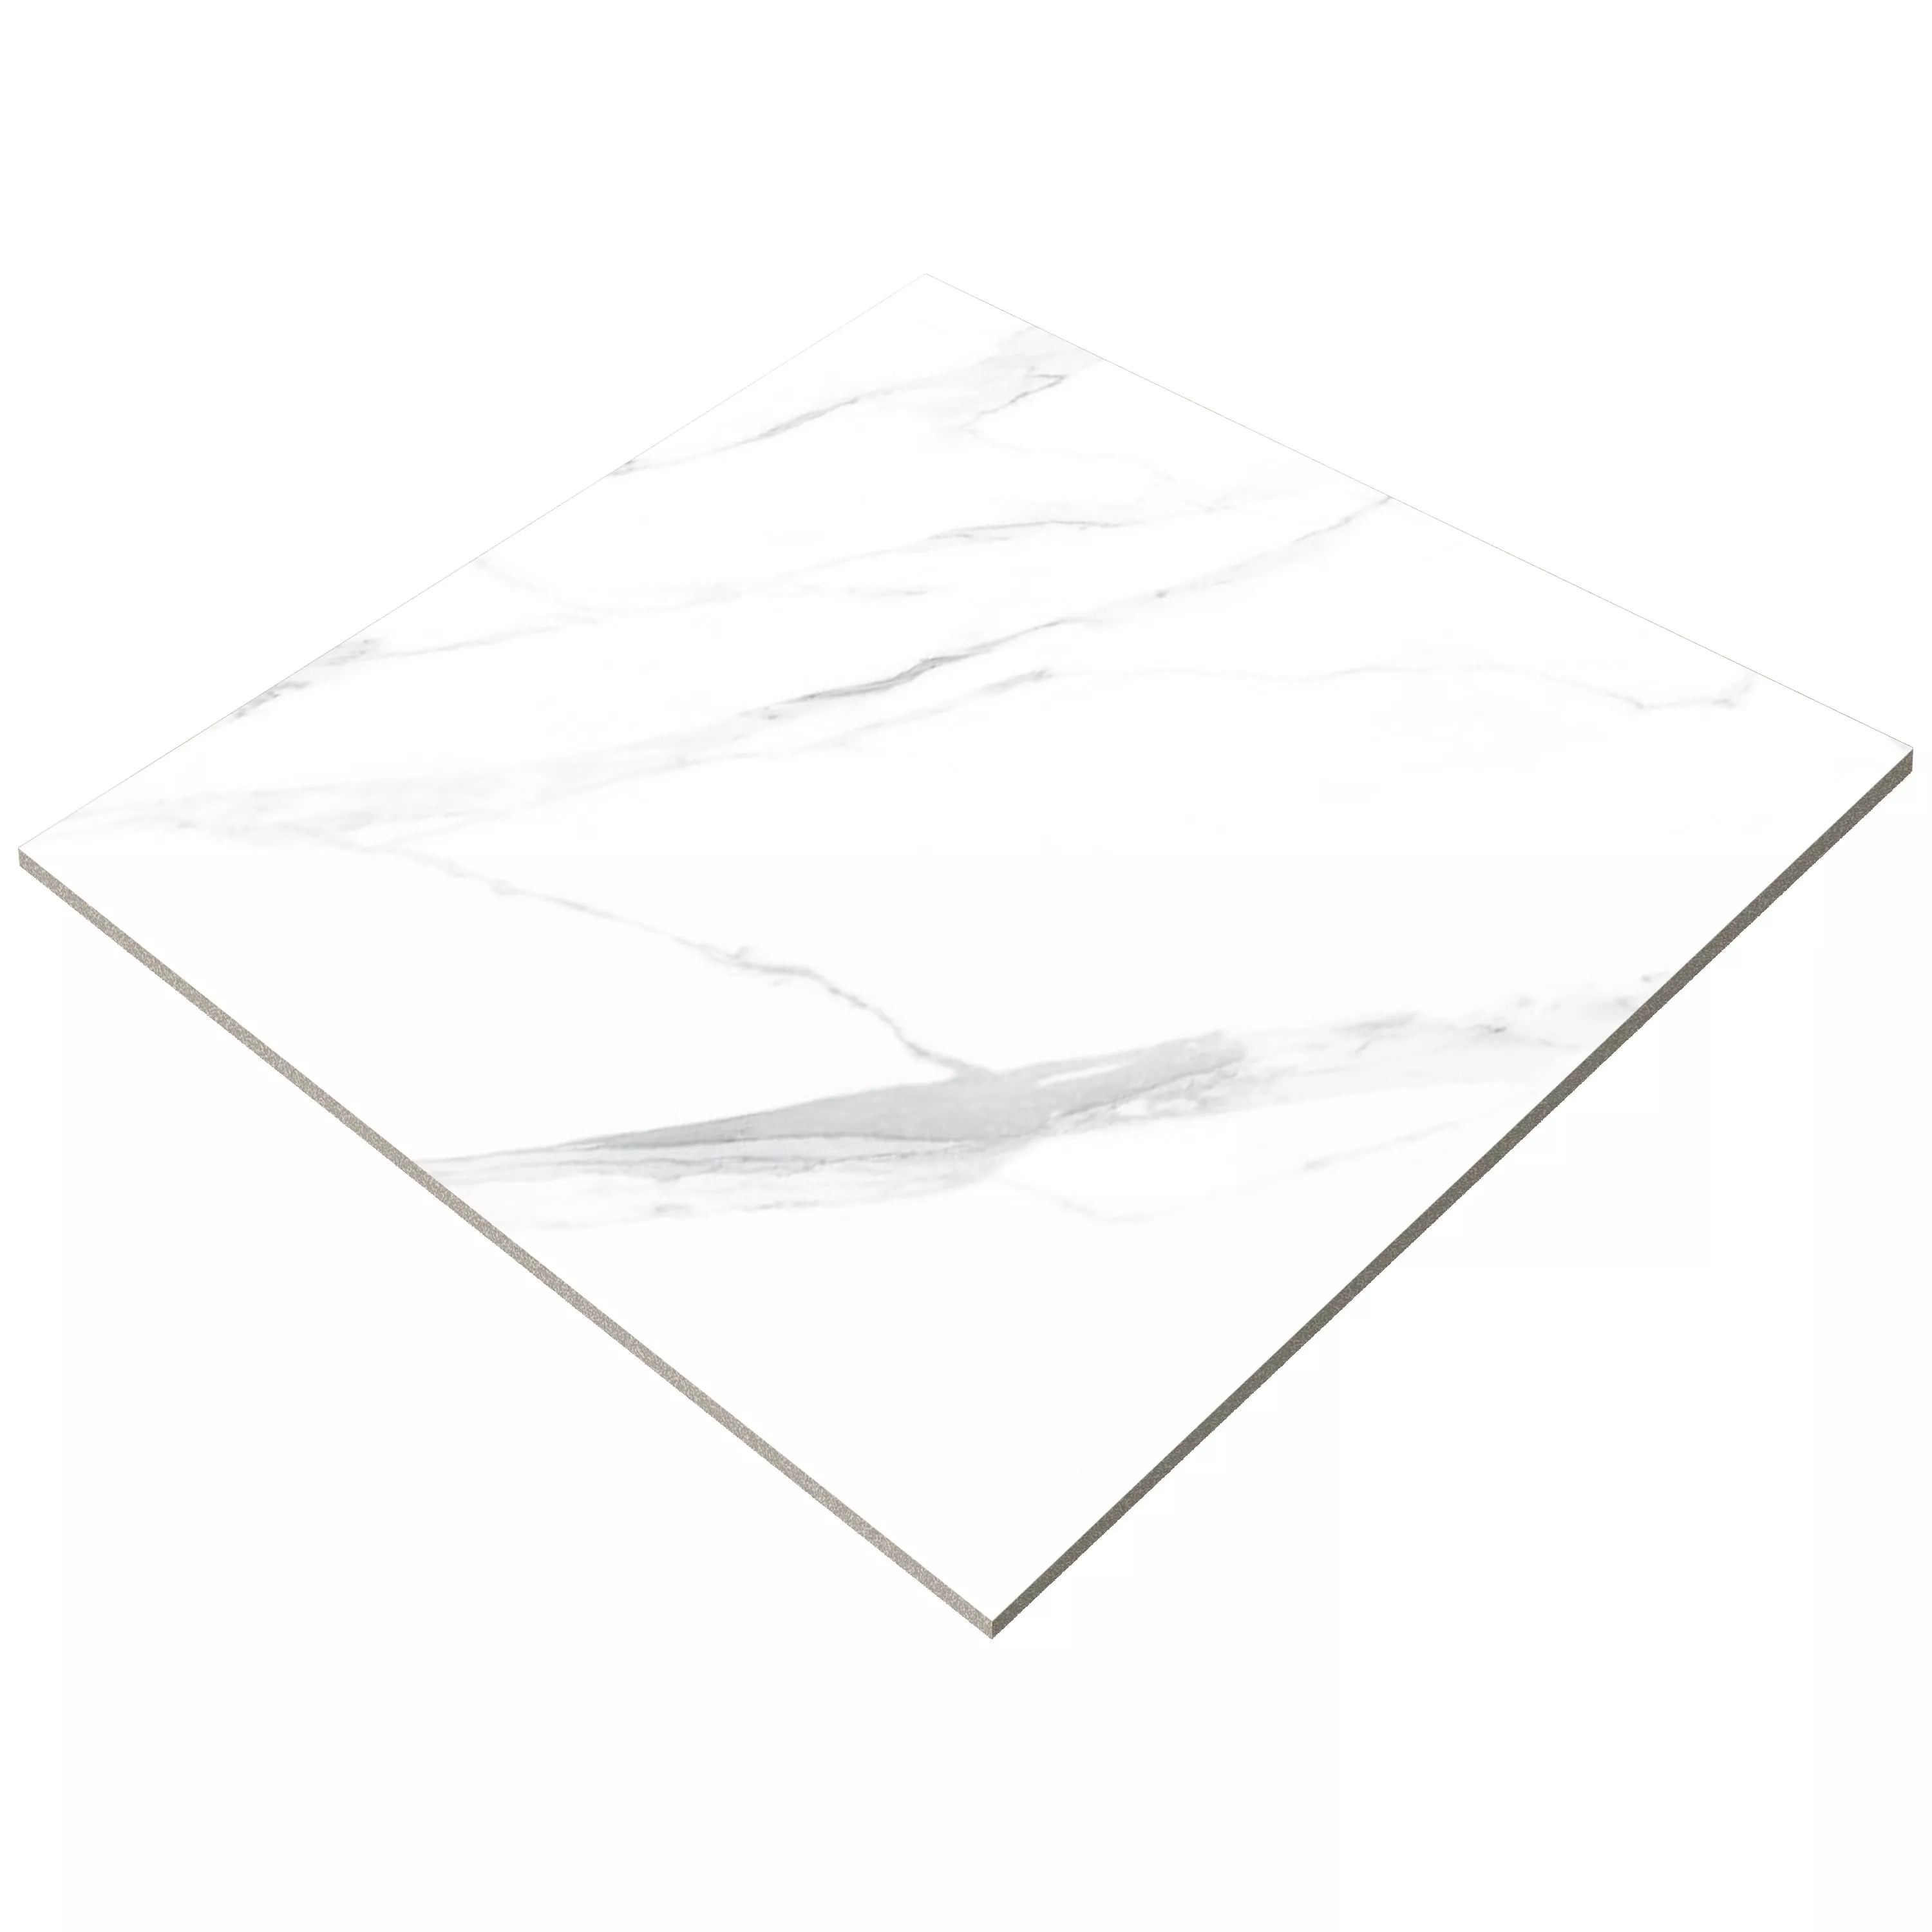 Muster von Bodenfliesen Serenity Marmoroptik Poliert Weiß 60x60cm